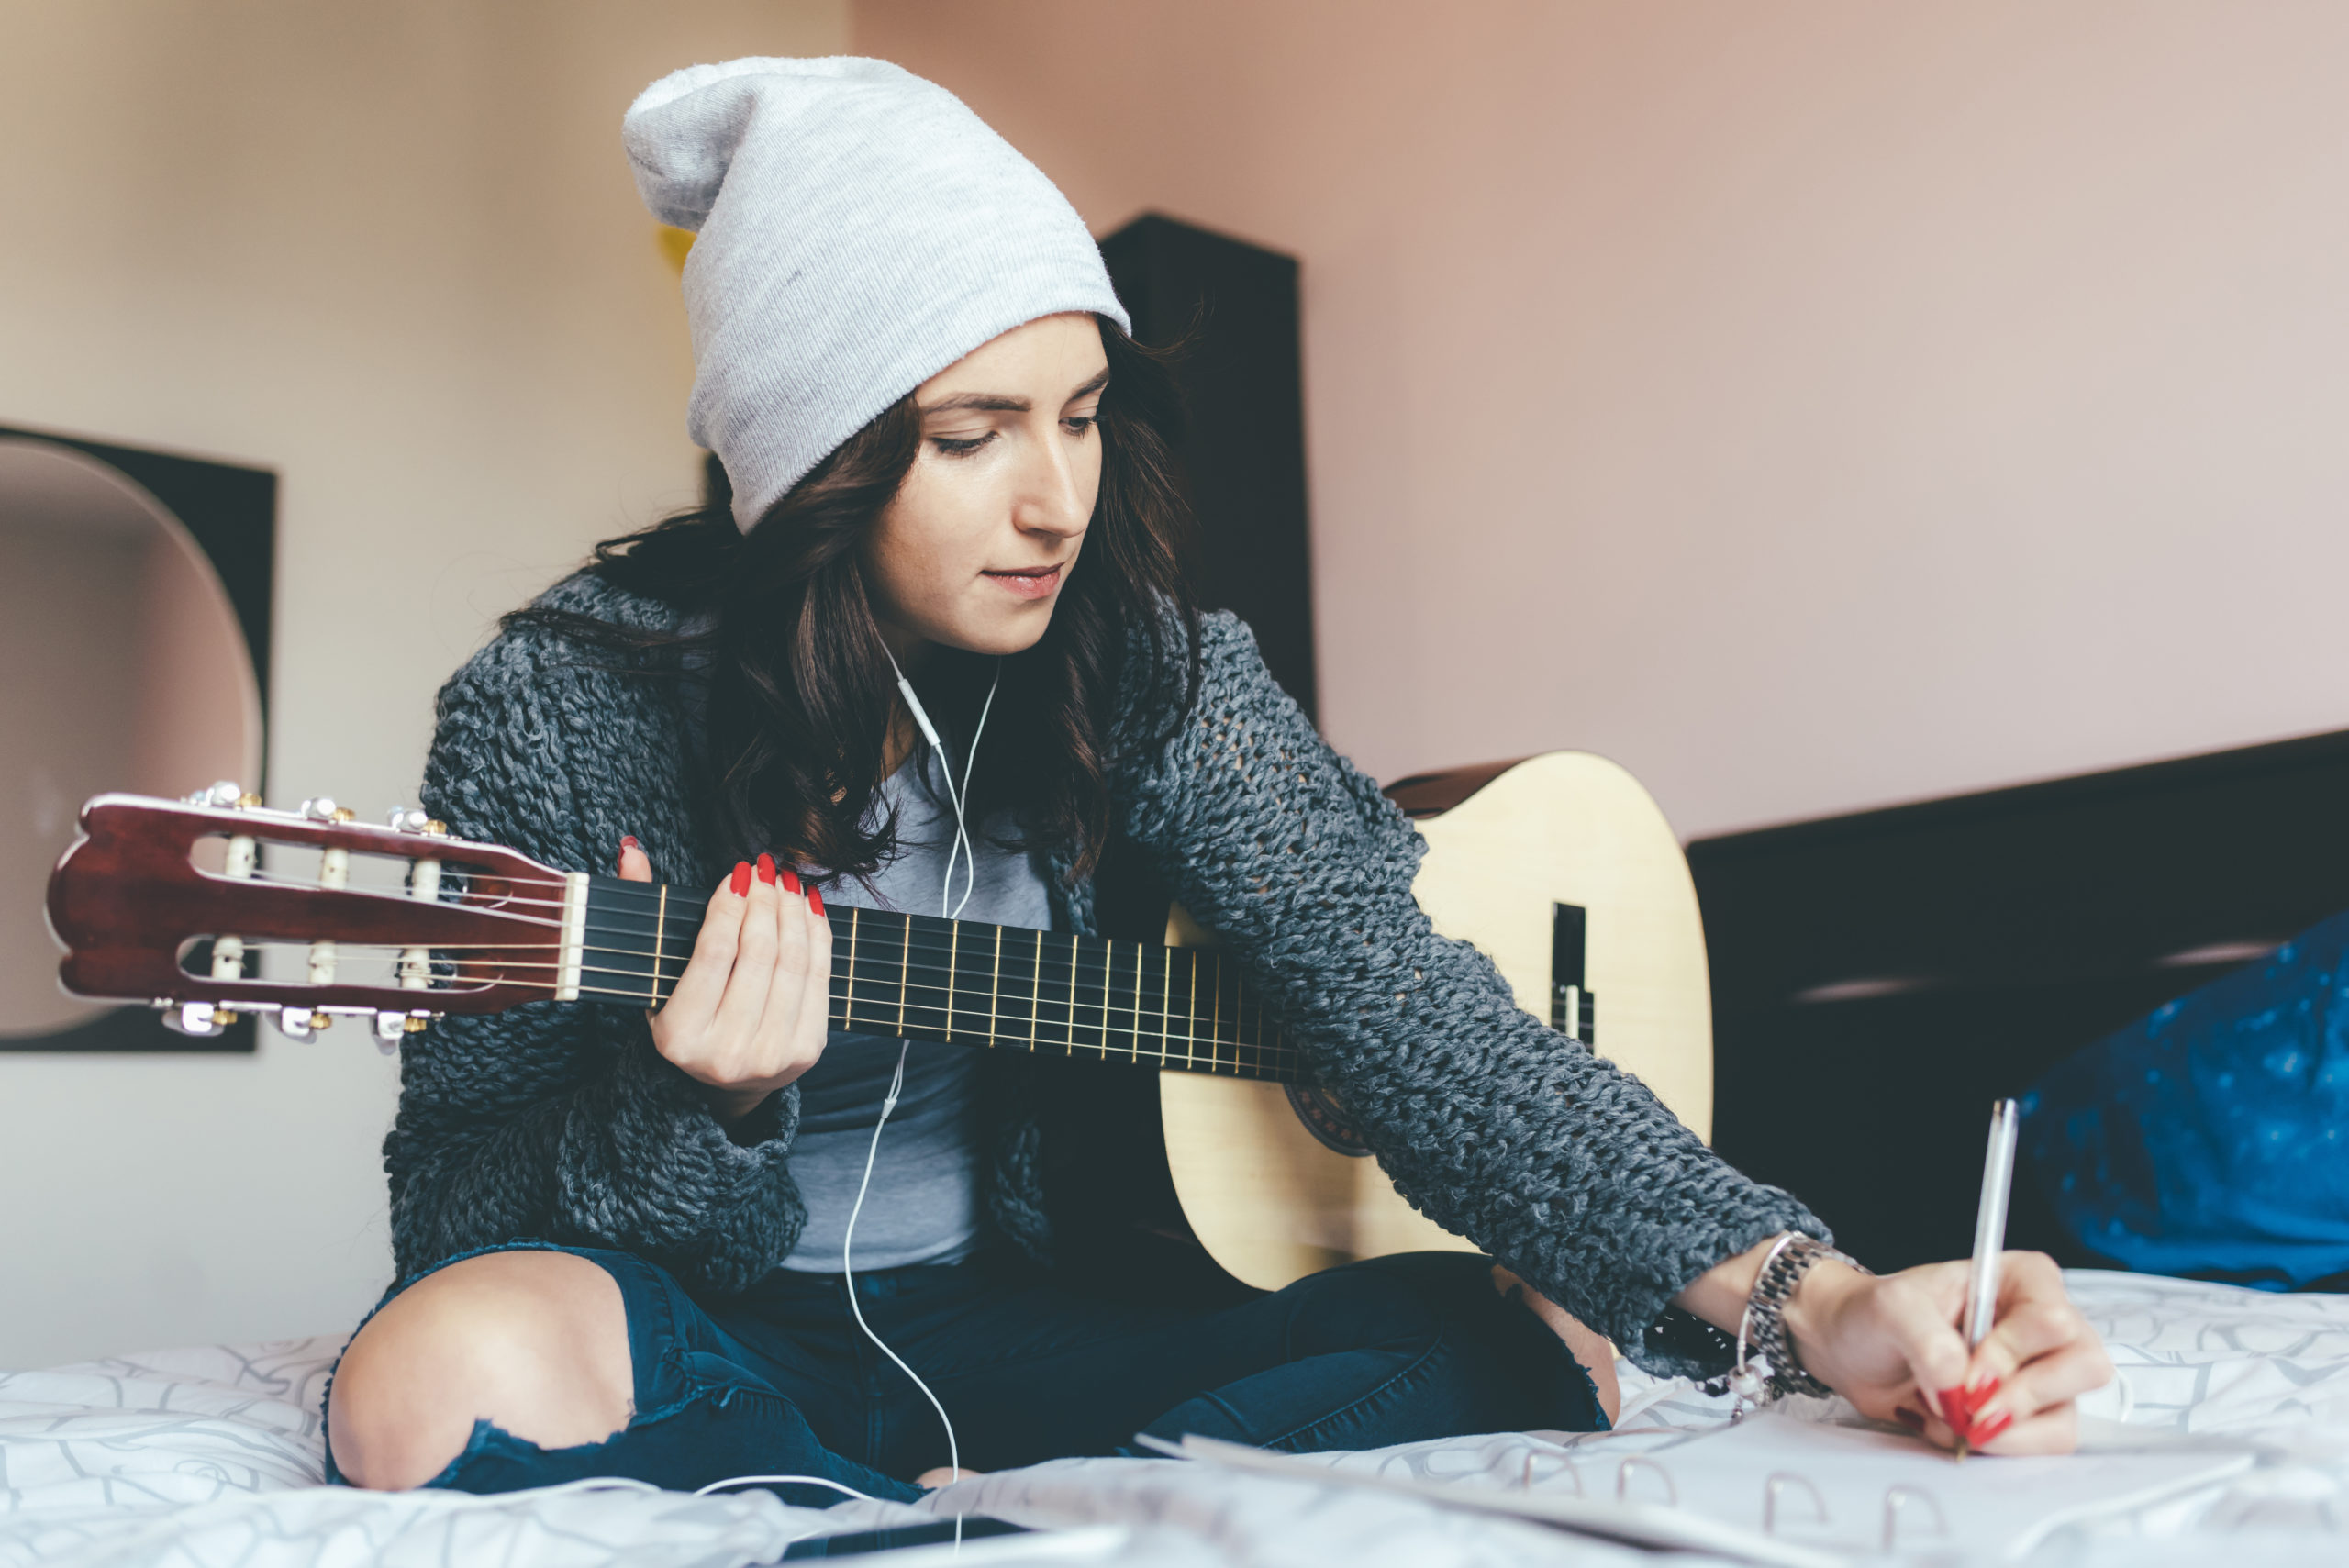 imagen de una mujer joven sosteniendo una guitarra y componiendo música | Colorado guitar lessons adults youth